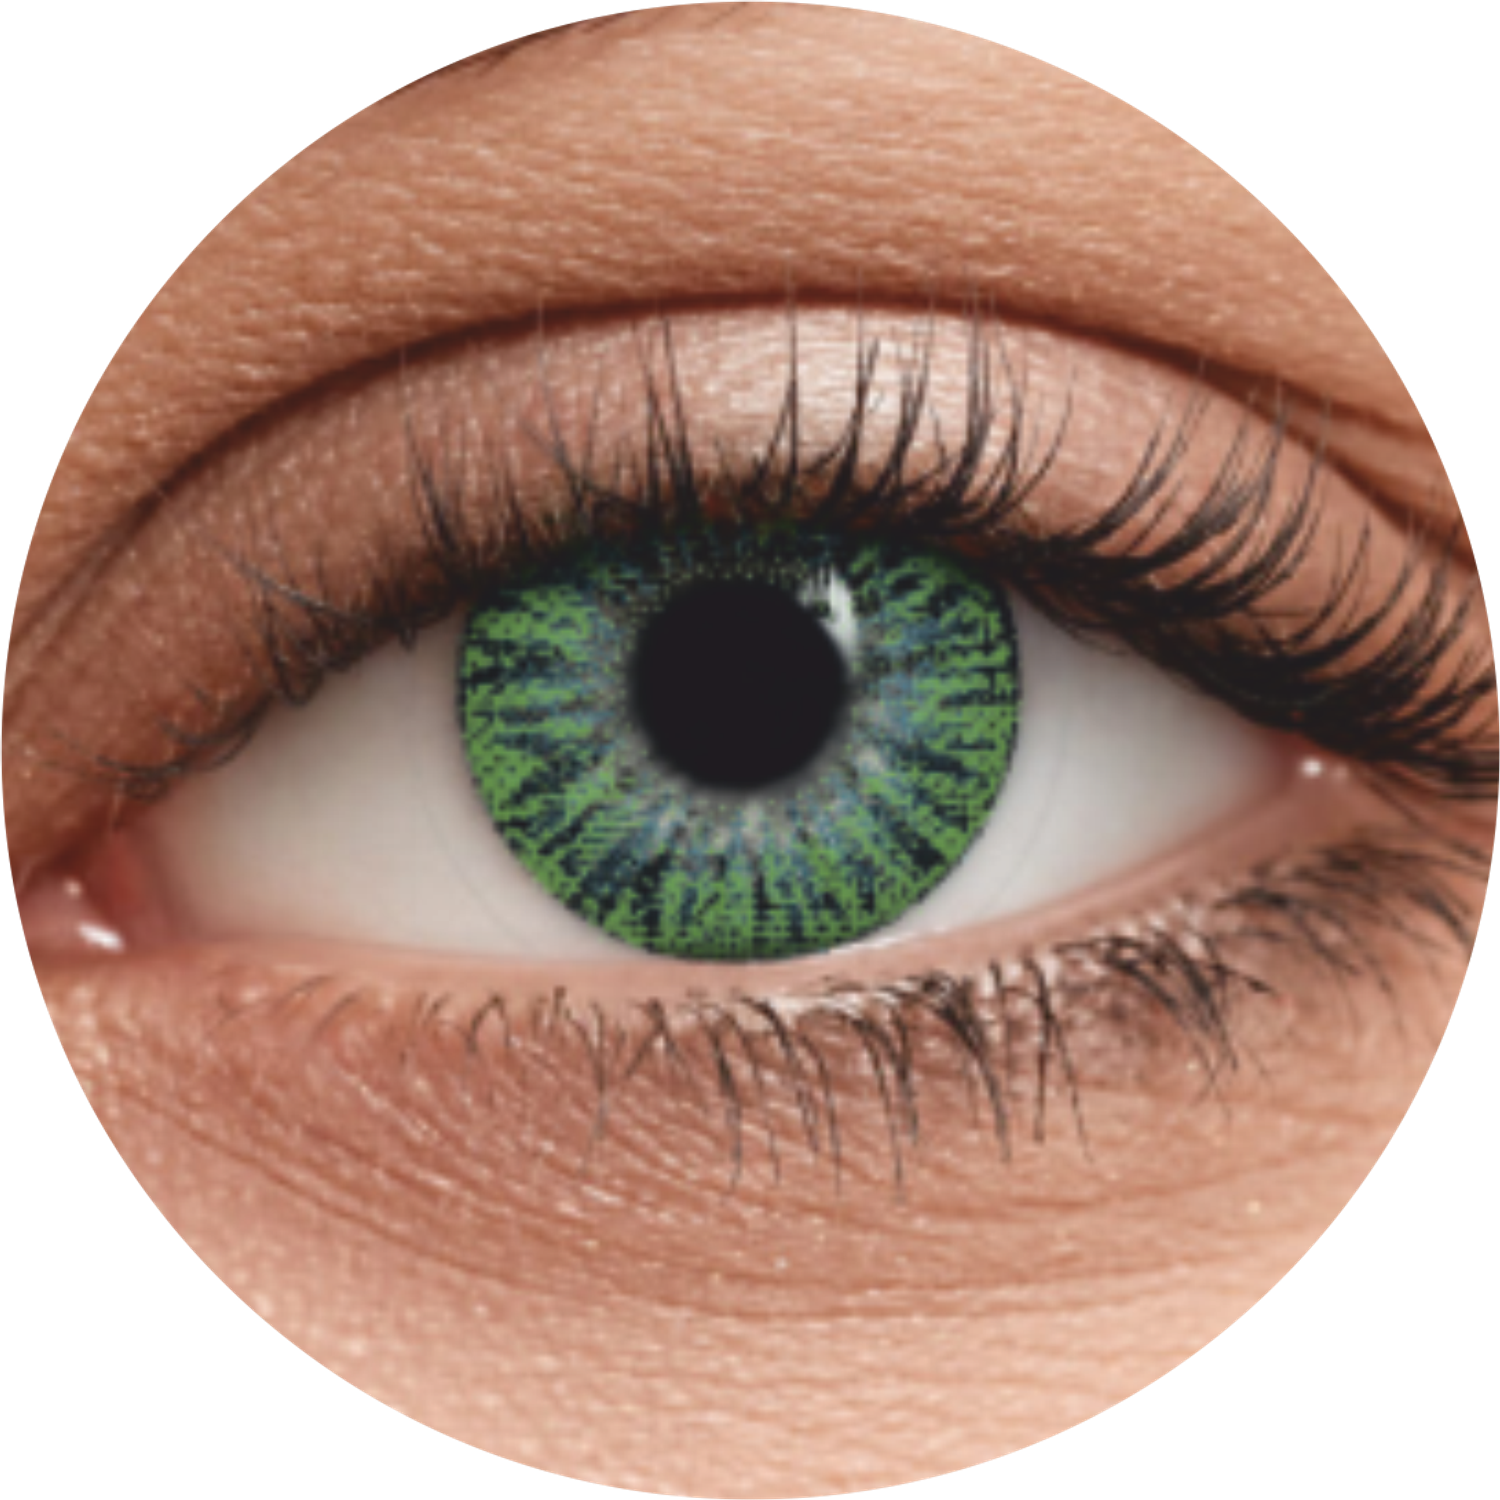 Цветные контактные линзы OKVision Fusion monthly R 8.6 -3.50 цвет Lime 2 шт 1 месяц - фото 2